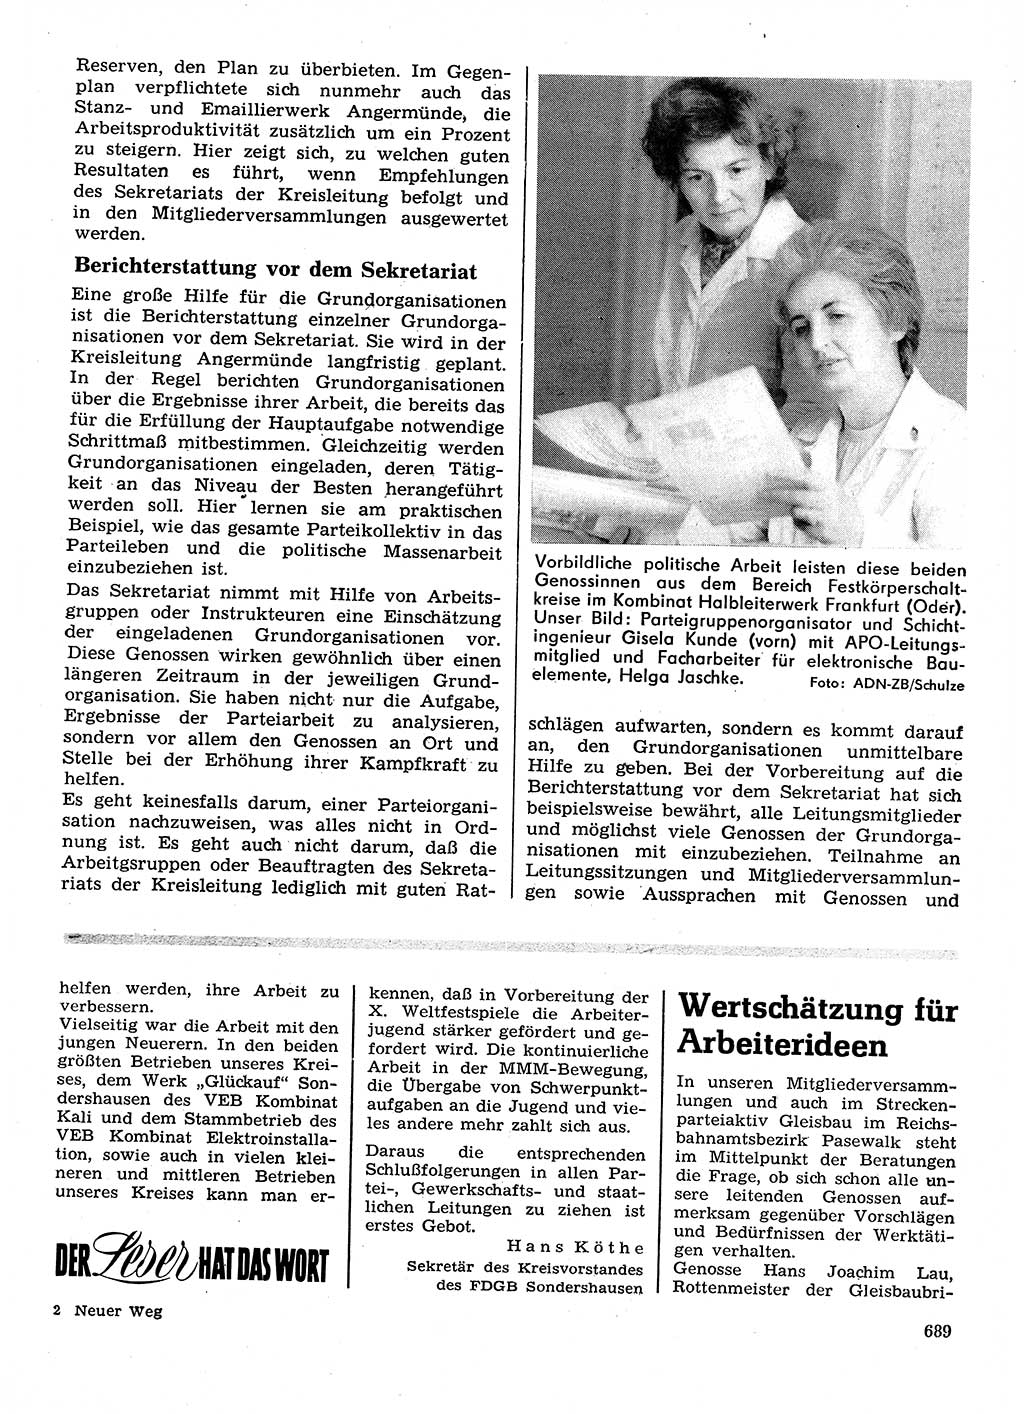 Neuer Weg (NW), Organ des Zentralkomitees (ZK) der SED (Sozialistische Einheitspartei Deutschlands) für Fragen des Parteilebens, 28. Jahrgang [Deutsche Demokratische Republik (DDR)] 1973, Seite 689 (NW ZK SED DDR 1973, S. 689)